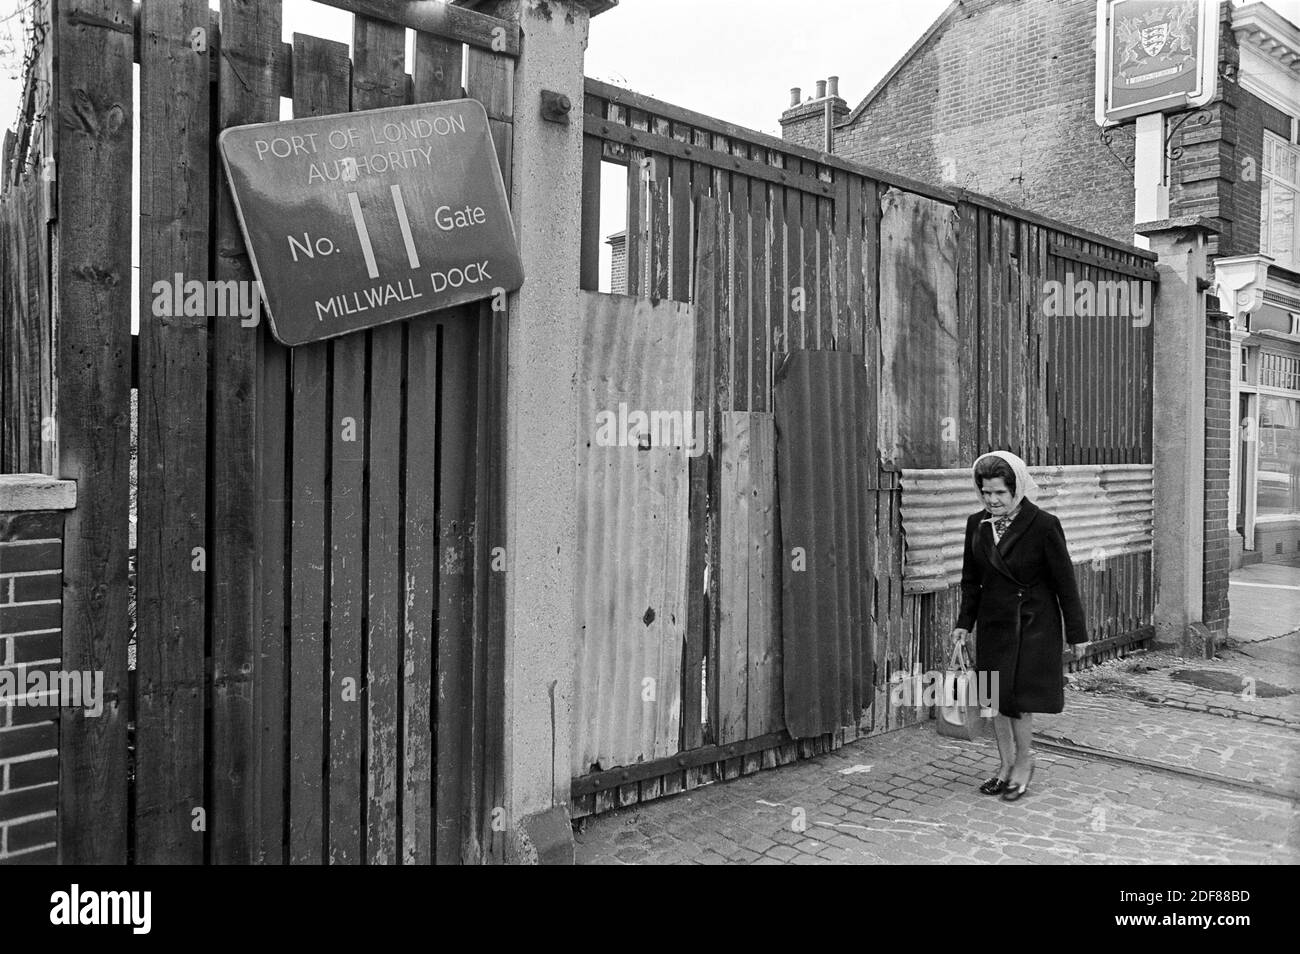 Regno Unito, Londra, Docklands, Isle of Dogs. Inizio 1974. Dorset Arms, (a destra) 377-379 Manchester Road. PLA No. 11 Gate, Millwall Dock. La pista ferroviaria è visibile sulla strada acciottolata. Foto Stock